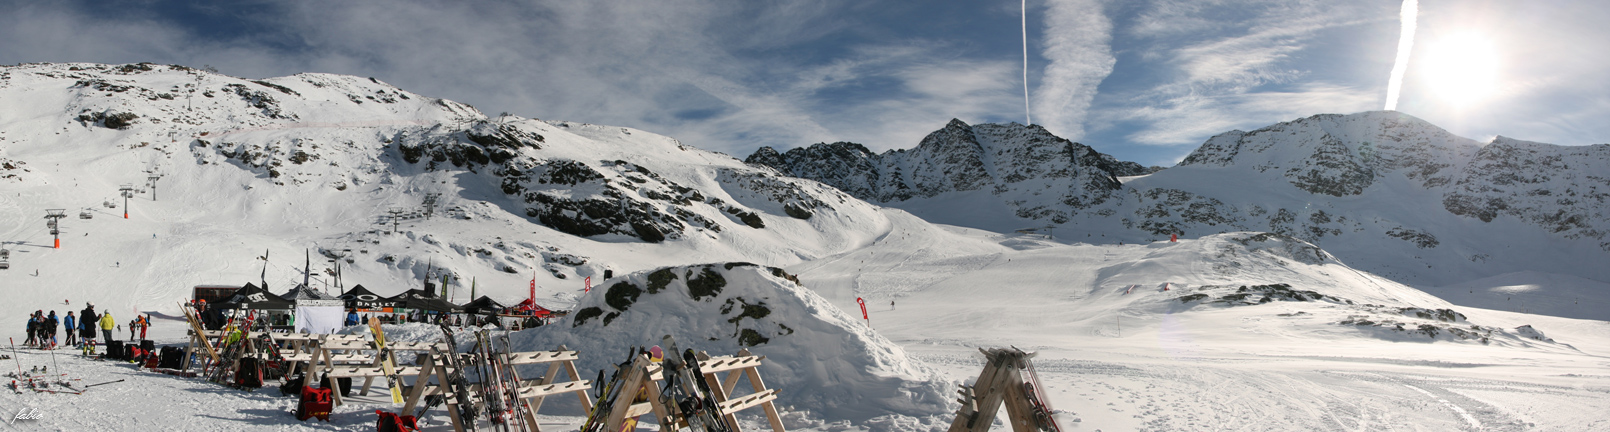 2178-panoramica-skiarea-madriccio.jpg